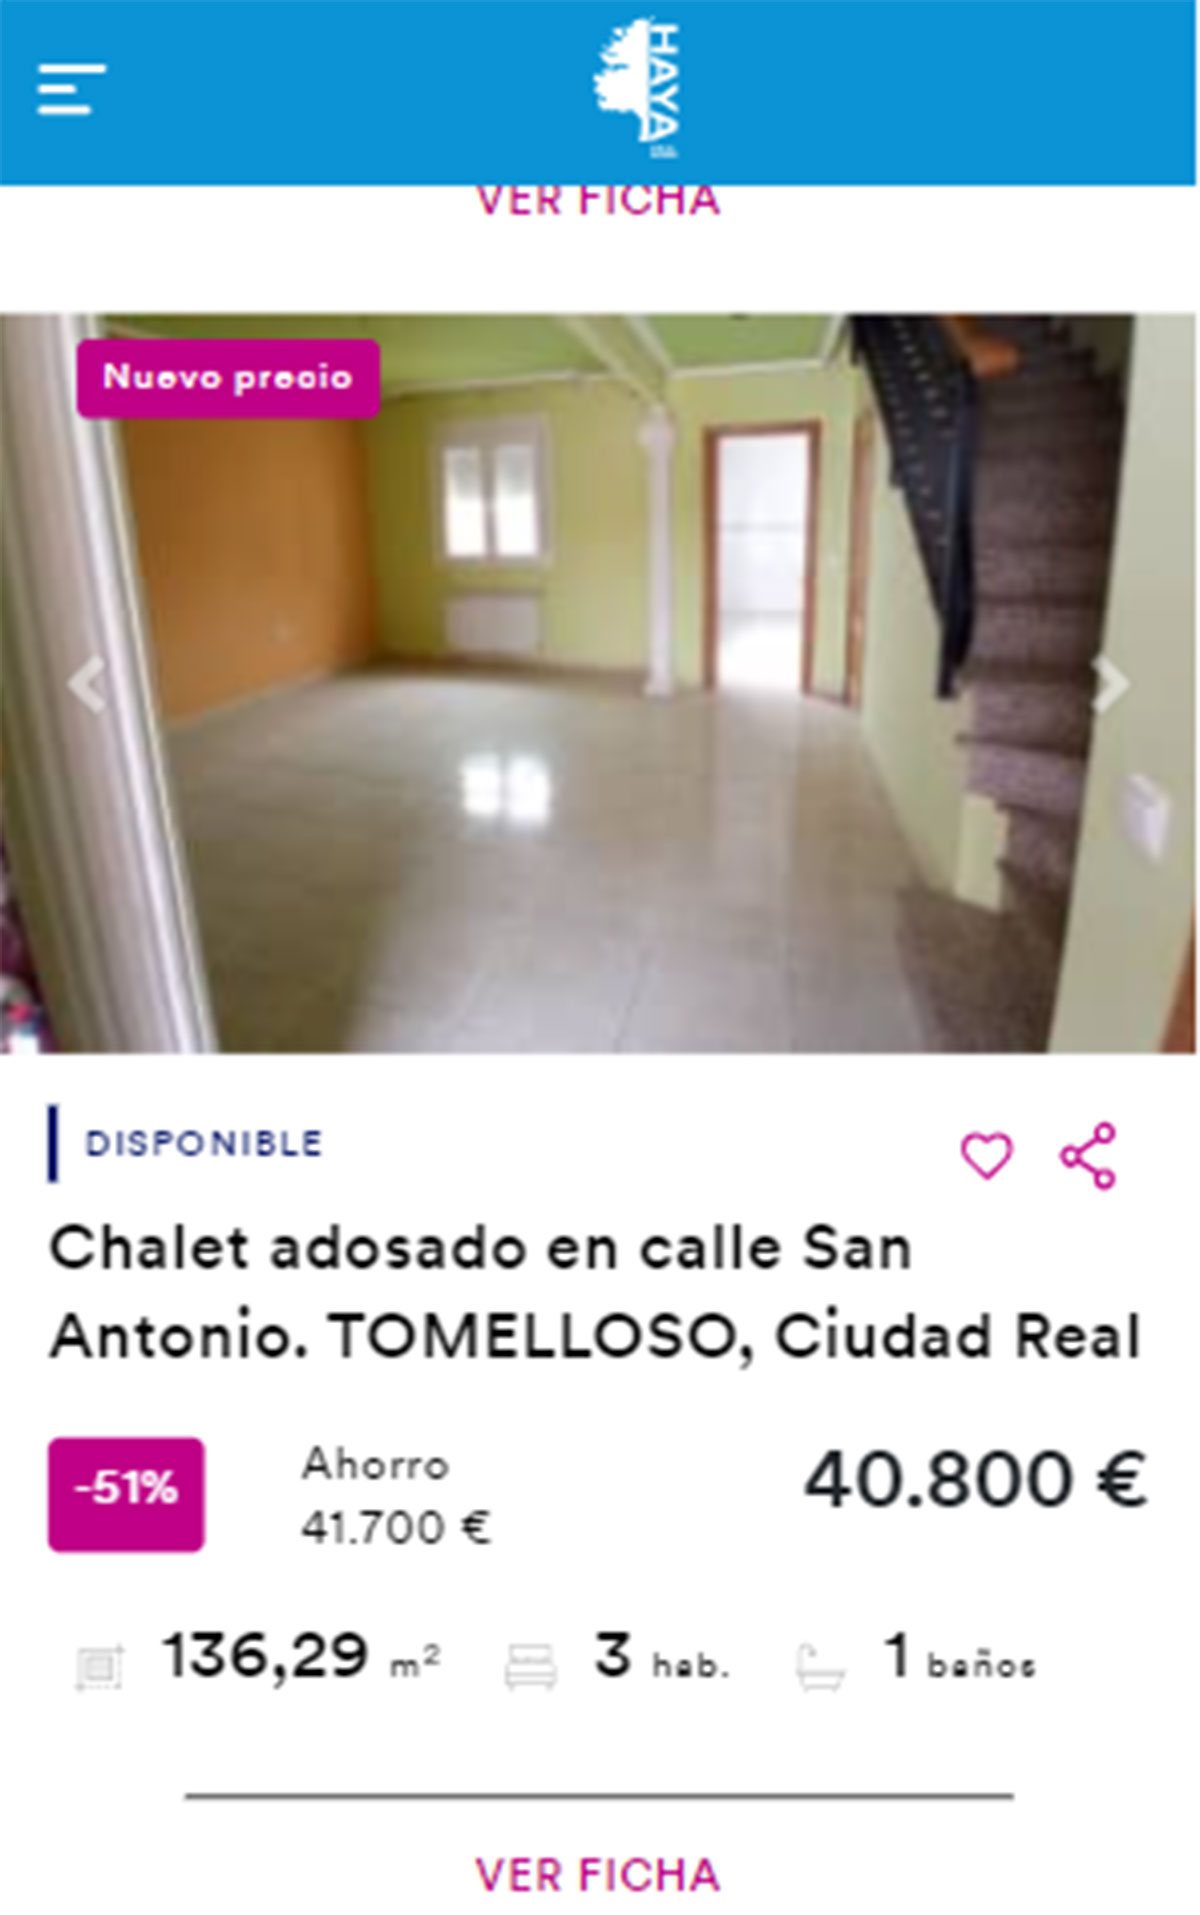 Chalet adosado en venta por 40.000 euros